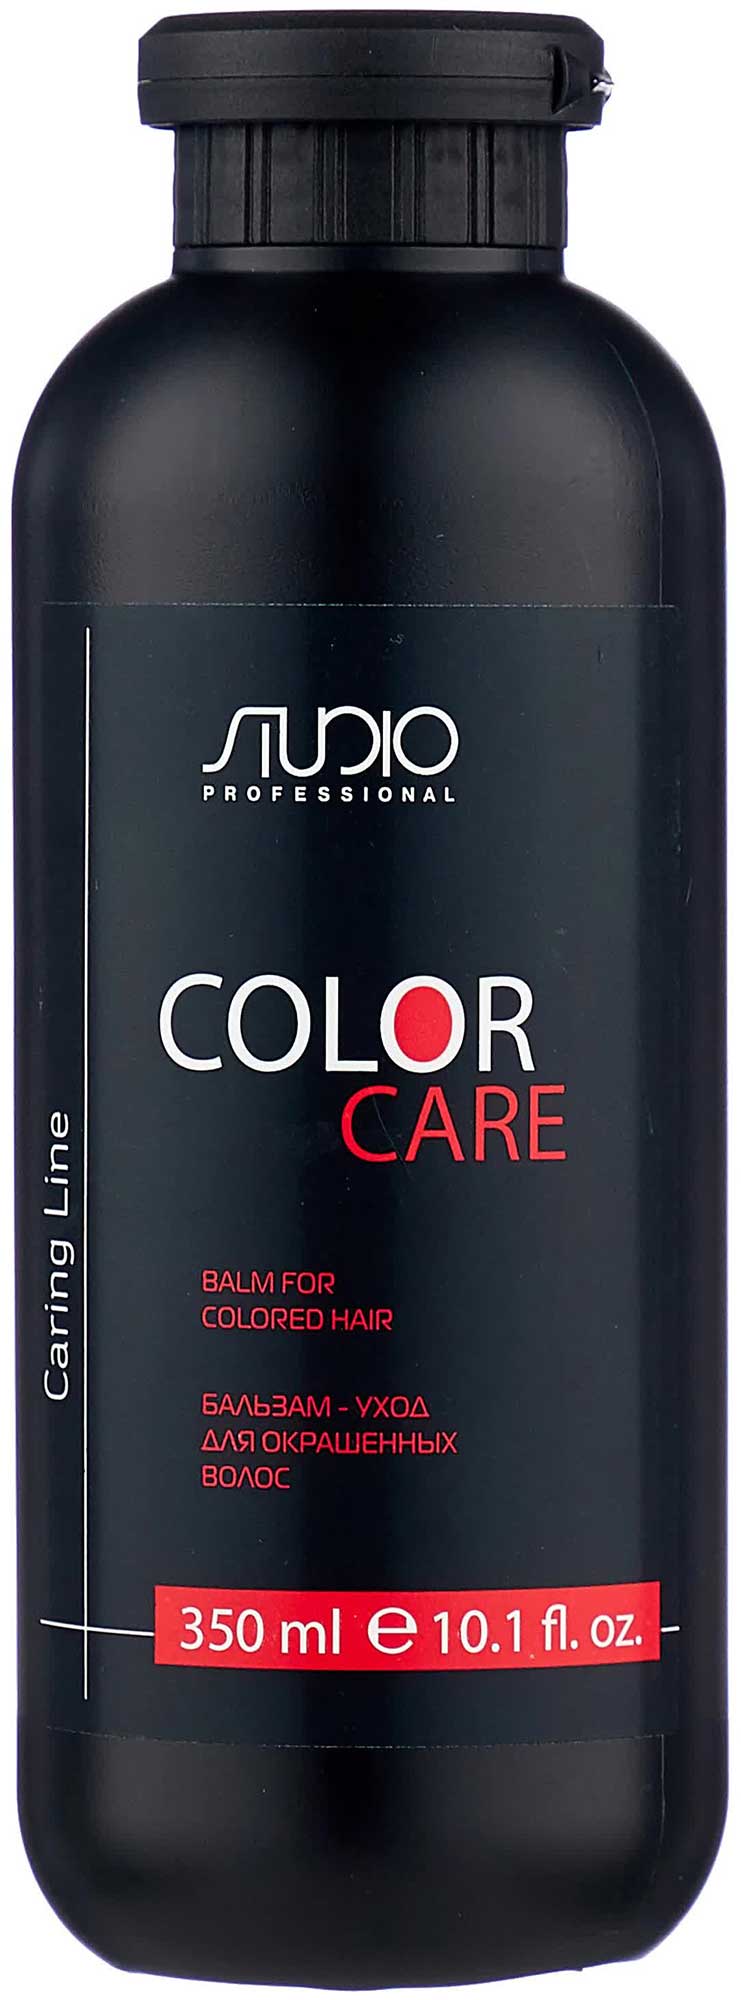 Бальзам Kapous Studio для окрашенных волос Color Care серии Caring Line 350 мл